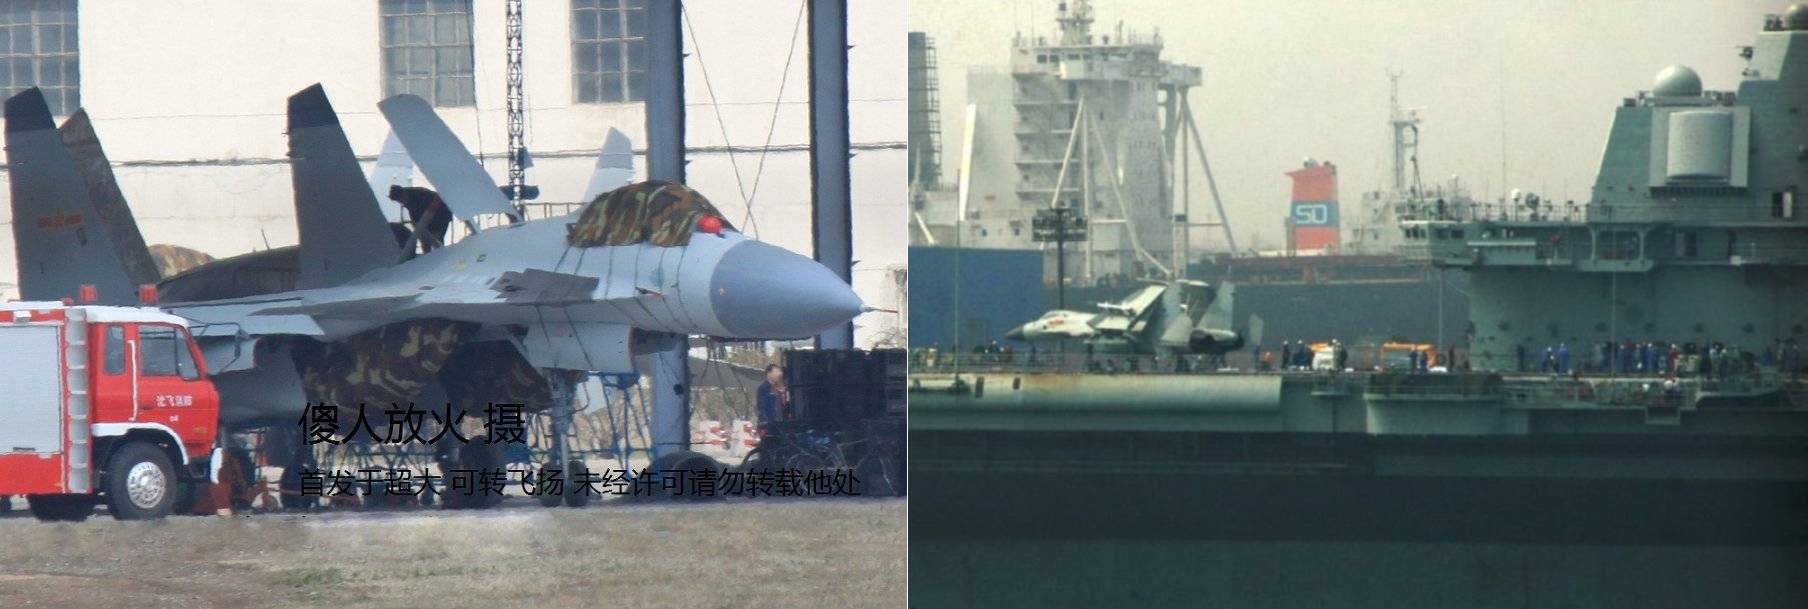 중국으로 가기 위해 이동 준비 중인 T-10K3, 랴오닝함에 선적되어 중국으로 이동하는 T-10K3. <출처 : China Military Review>